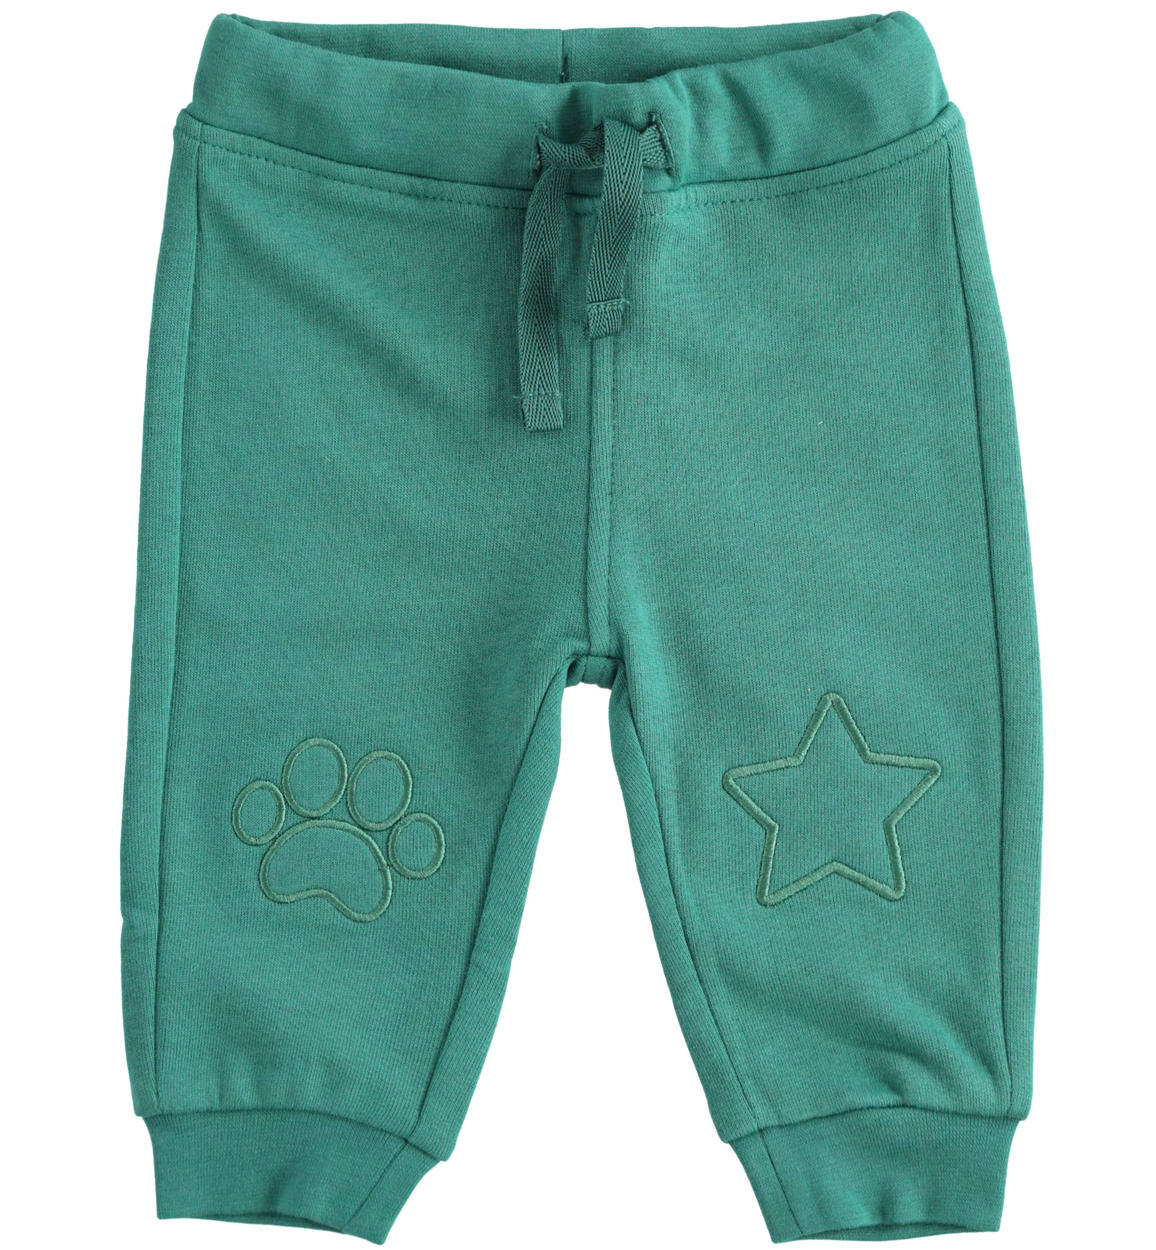 Pantalone in felpa invernale con toppe per bambino da 0 a 18 mesi iDO -  Miniconf Shop